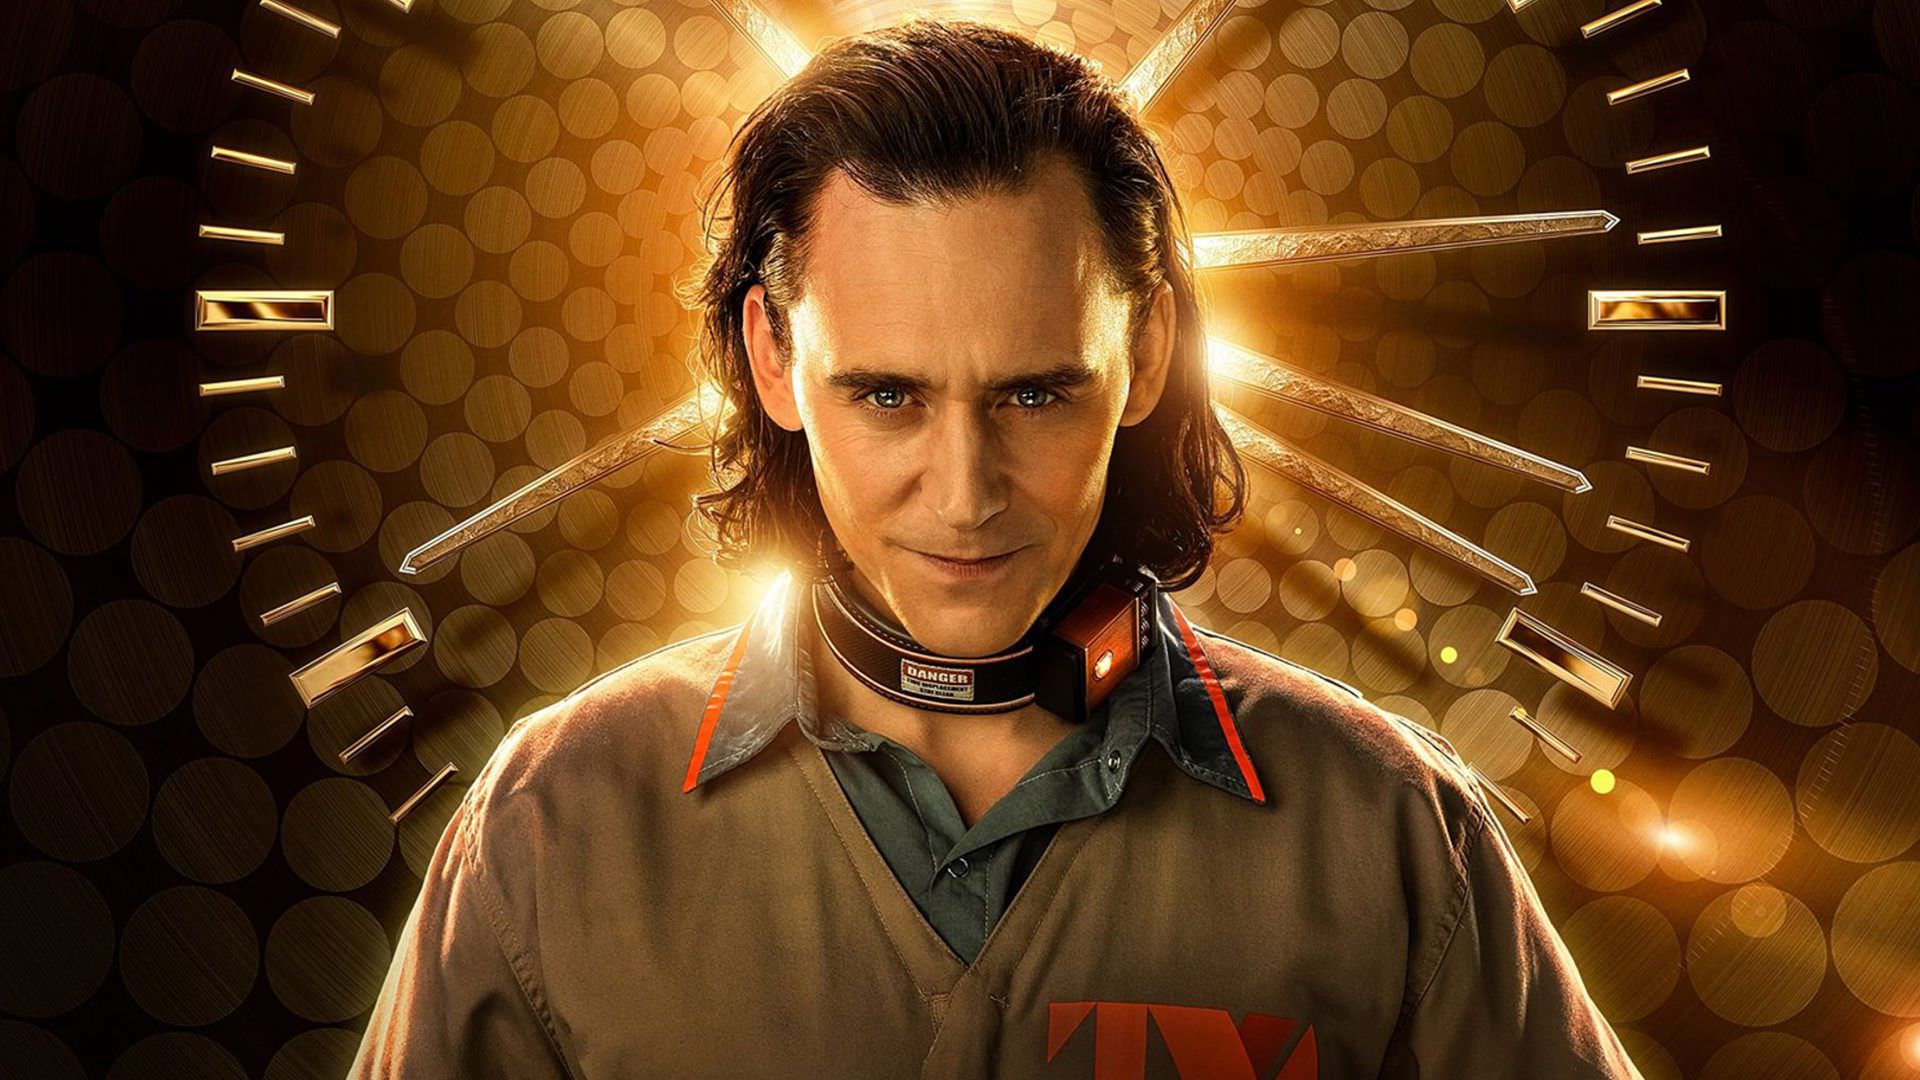 ویدیوهایی جدید از سریال Loki با محوریت اسیر شدن لوکی منتشر شد